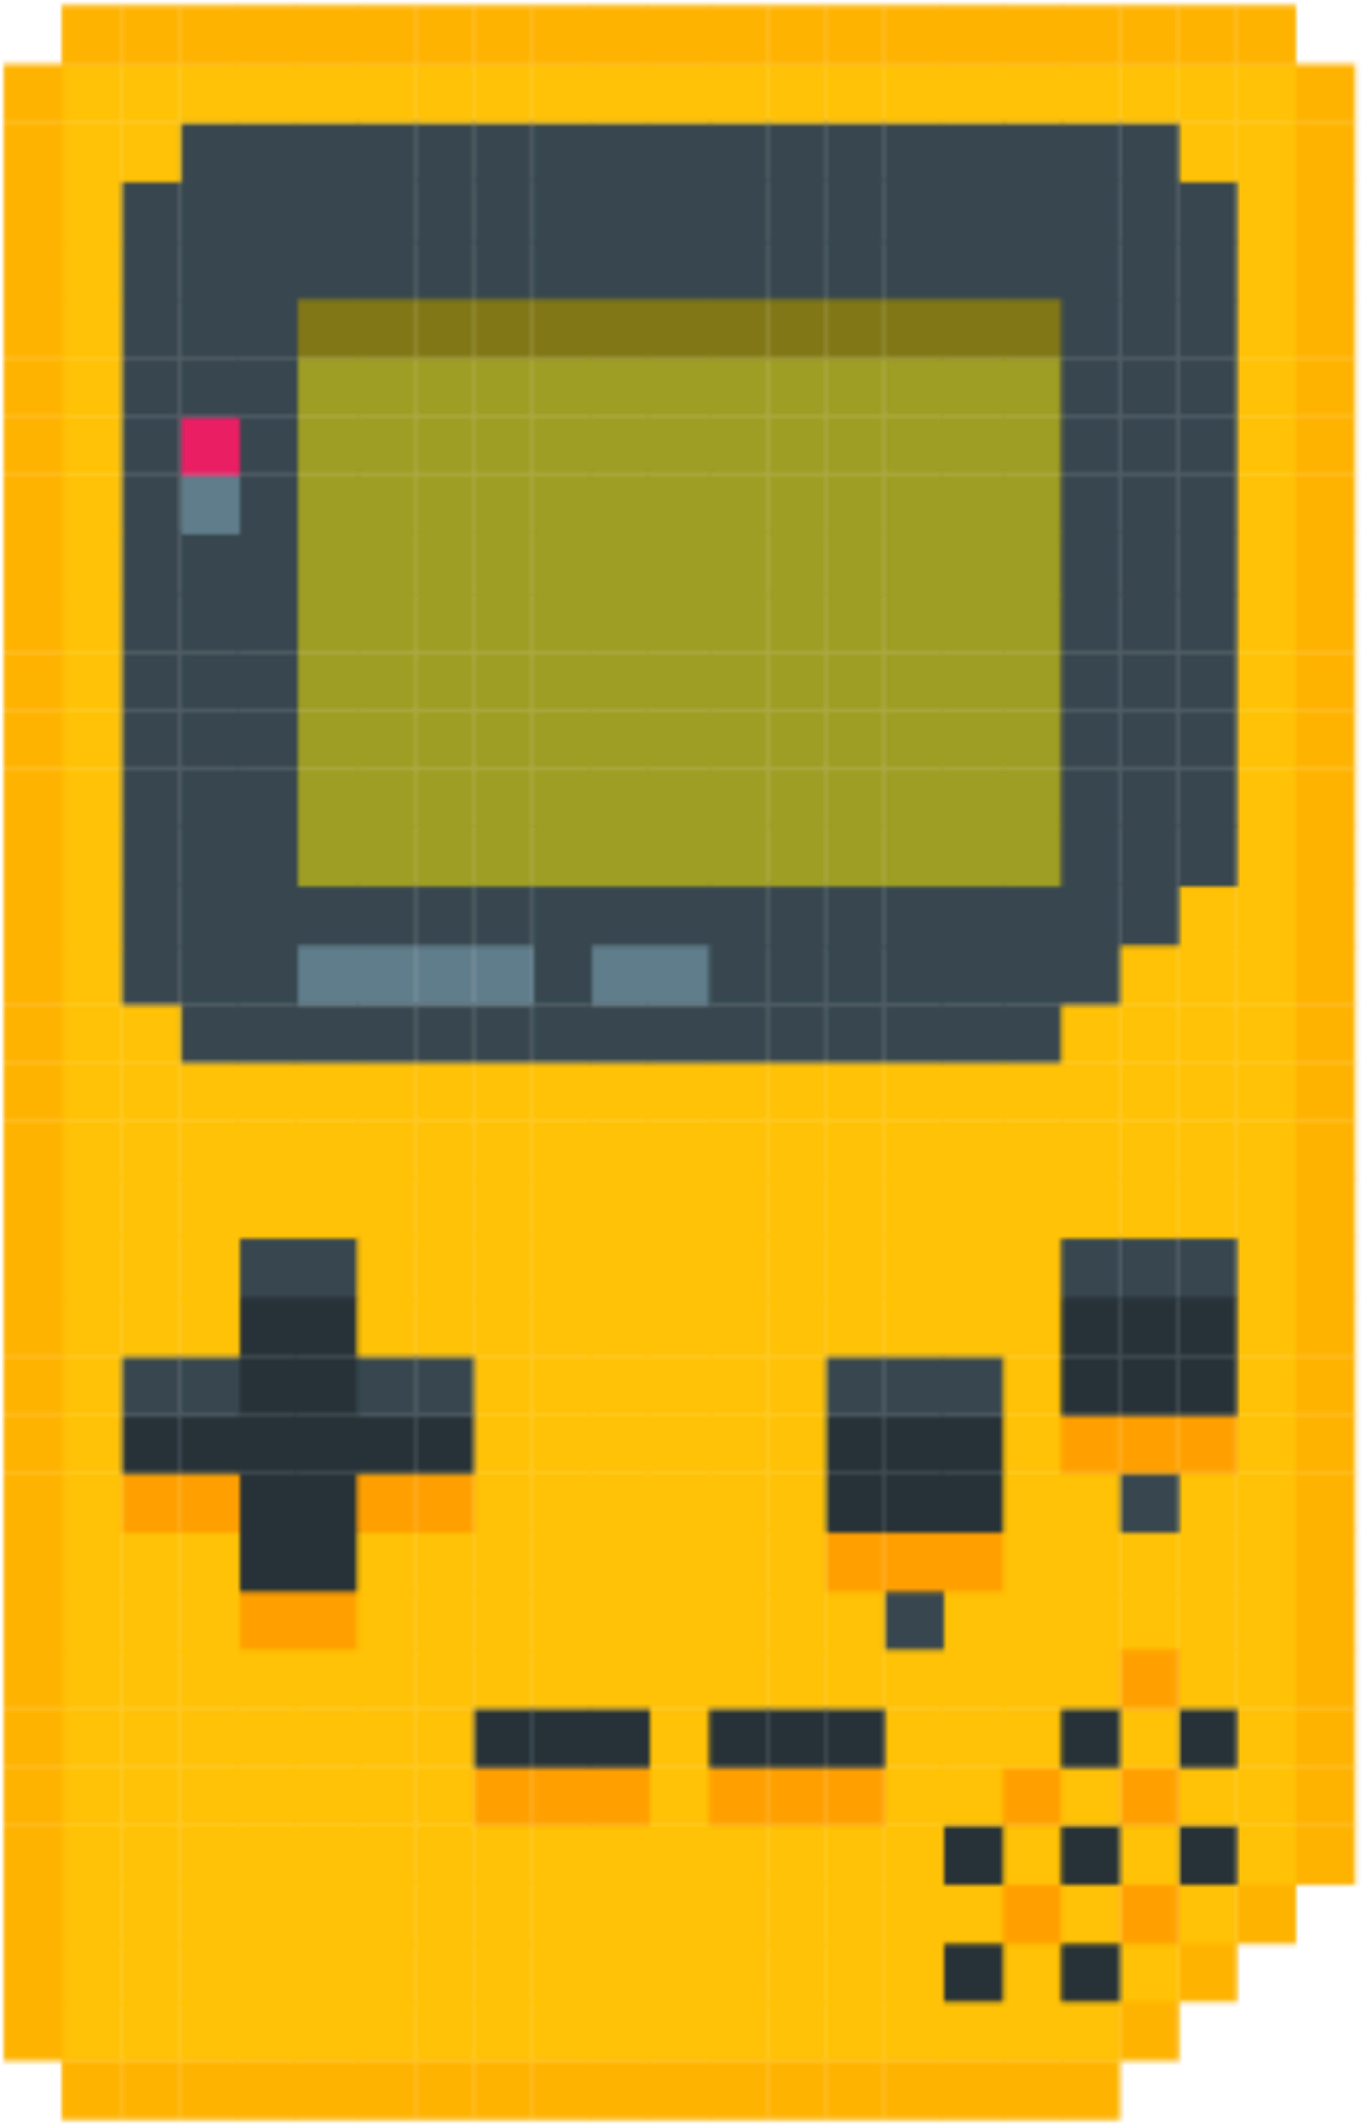 Gameboy Sticker - Pixel Art Game Boy (2896x2896)